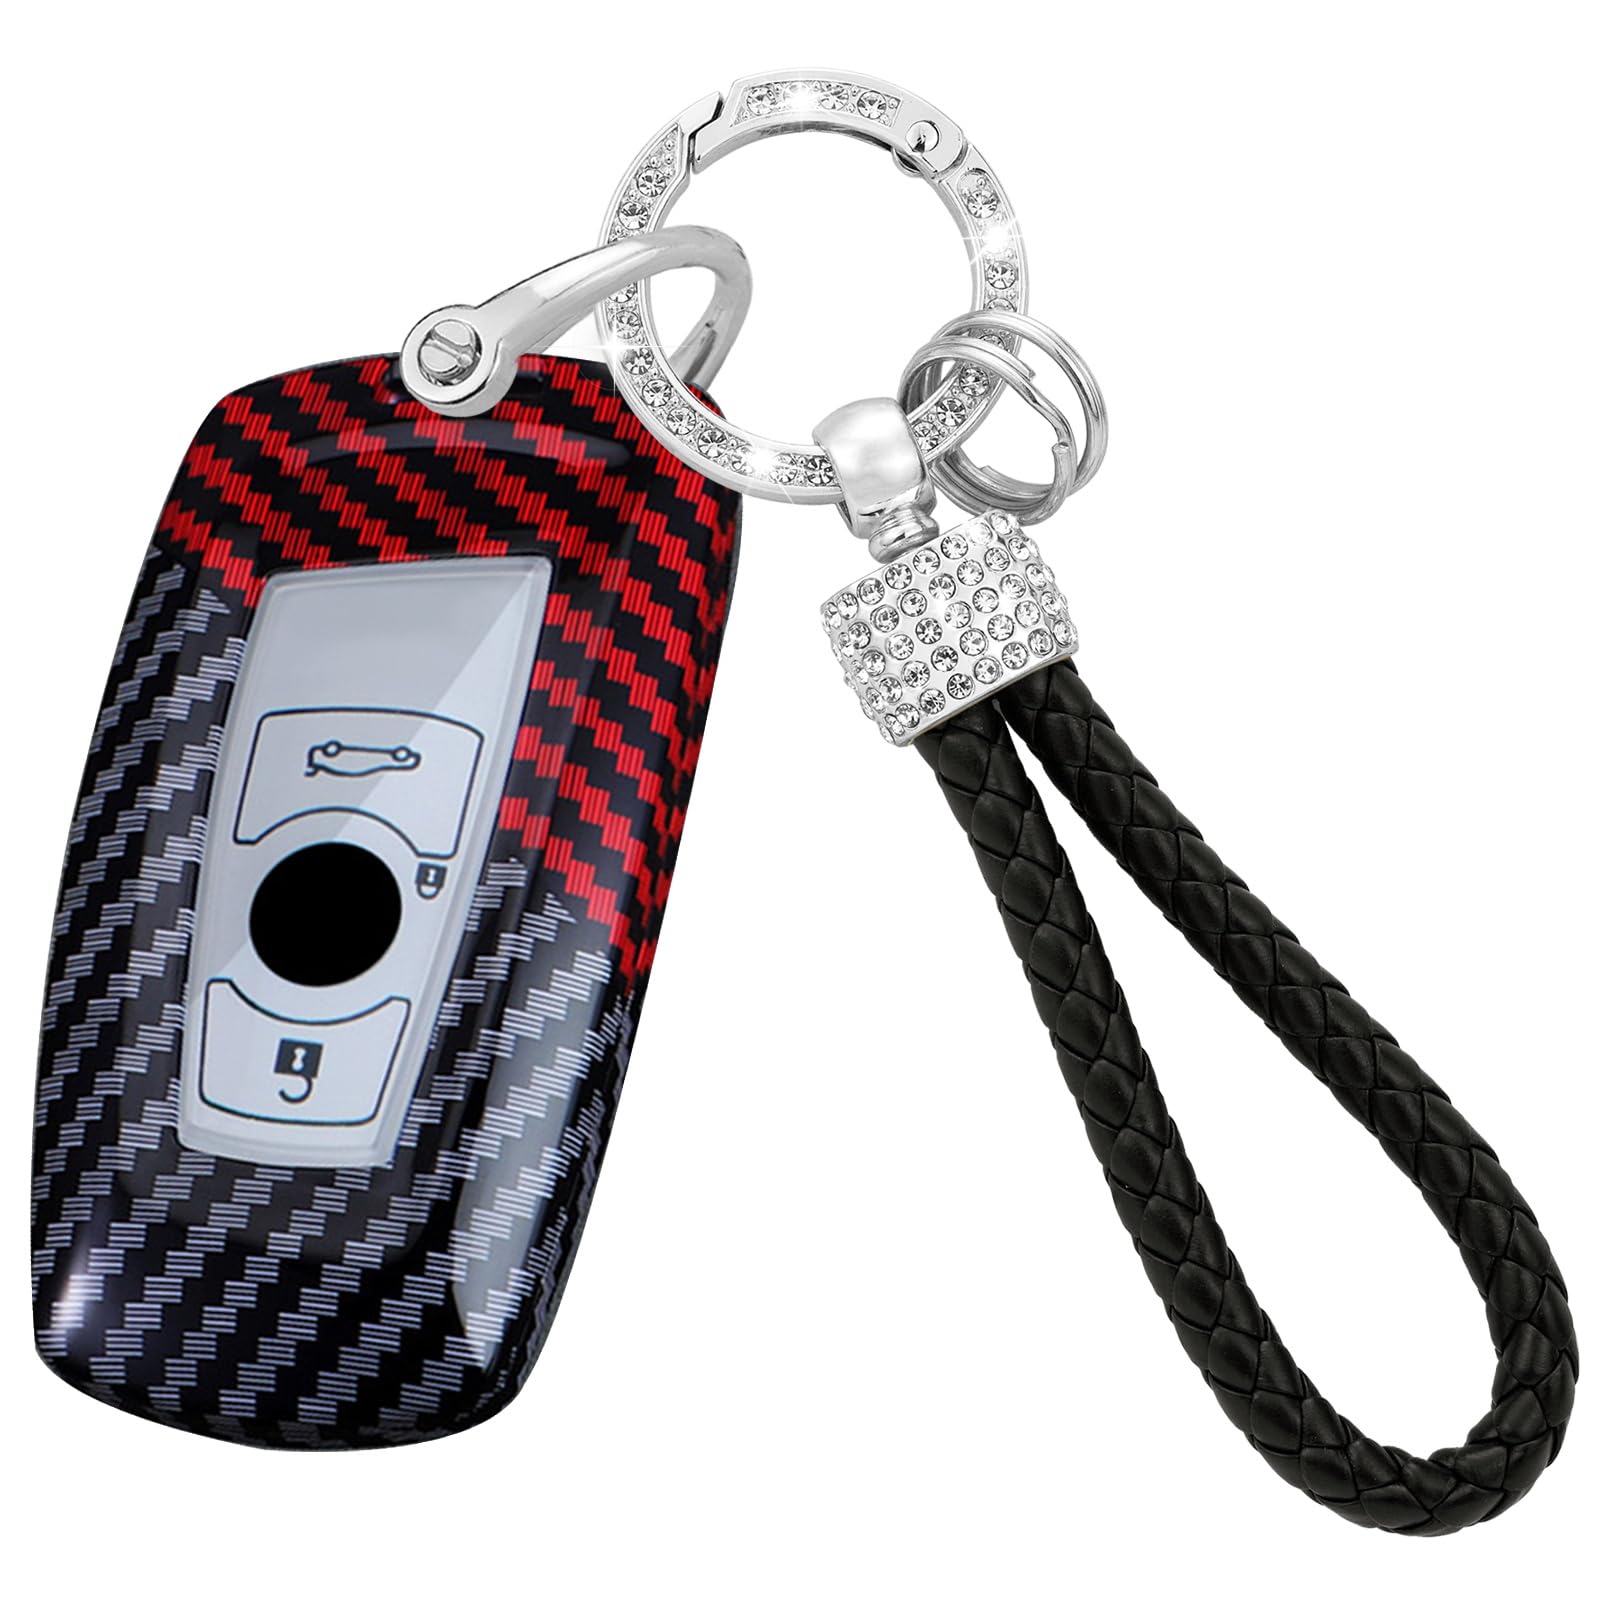 TECART Smart Funkschlüssel Cover Schlüssel Gehäuse Passt für BMW 1 2 3 4 5 6 7 Serie F35 F22 X3 F25 F20 F22 F30 F10 F11 F06 F01 Mit Diamant Schlüsselanhänger Schlüssel PC 3 Tasten-Schwarz Rot von TECART